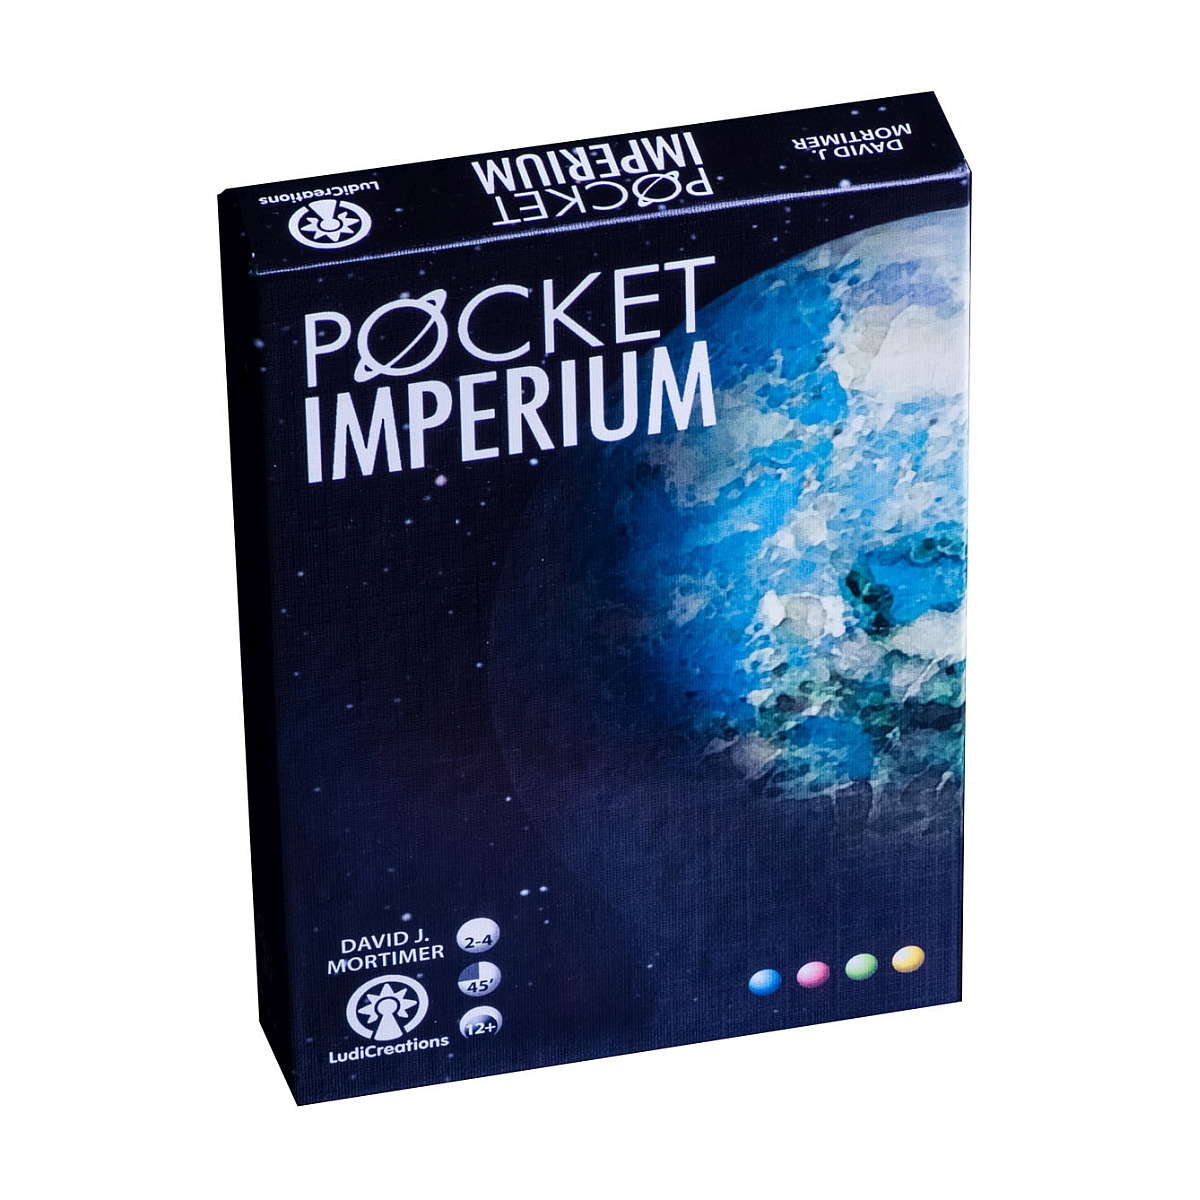 Pocket imperium Box